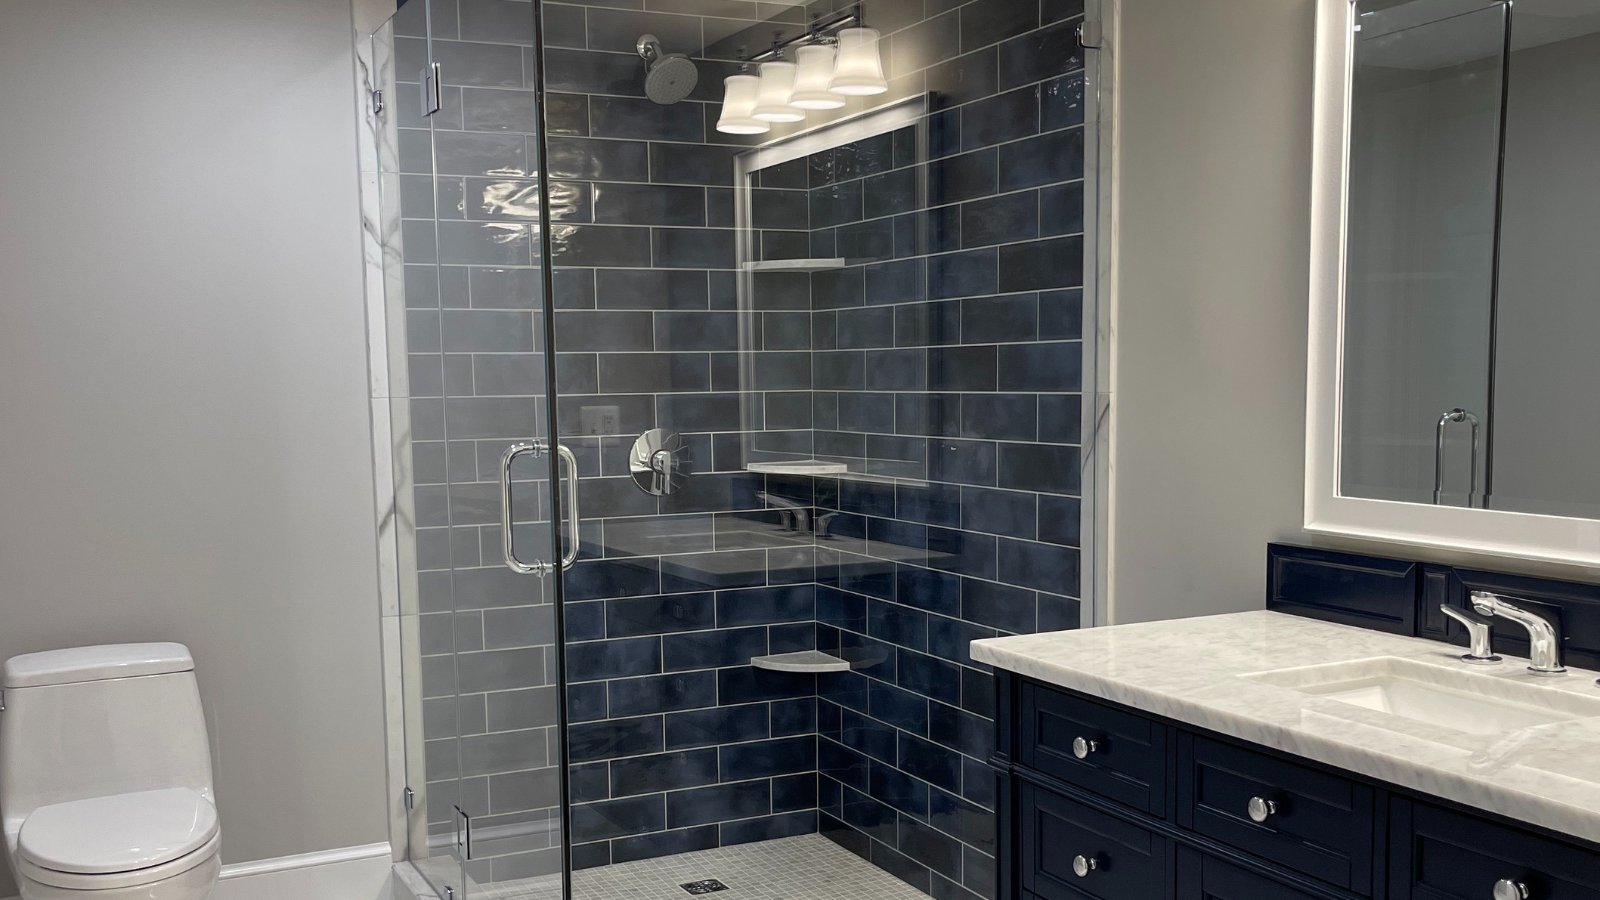 Complete Bathroom Remodel - Finished